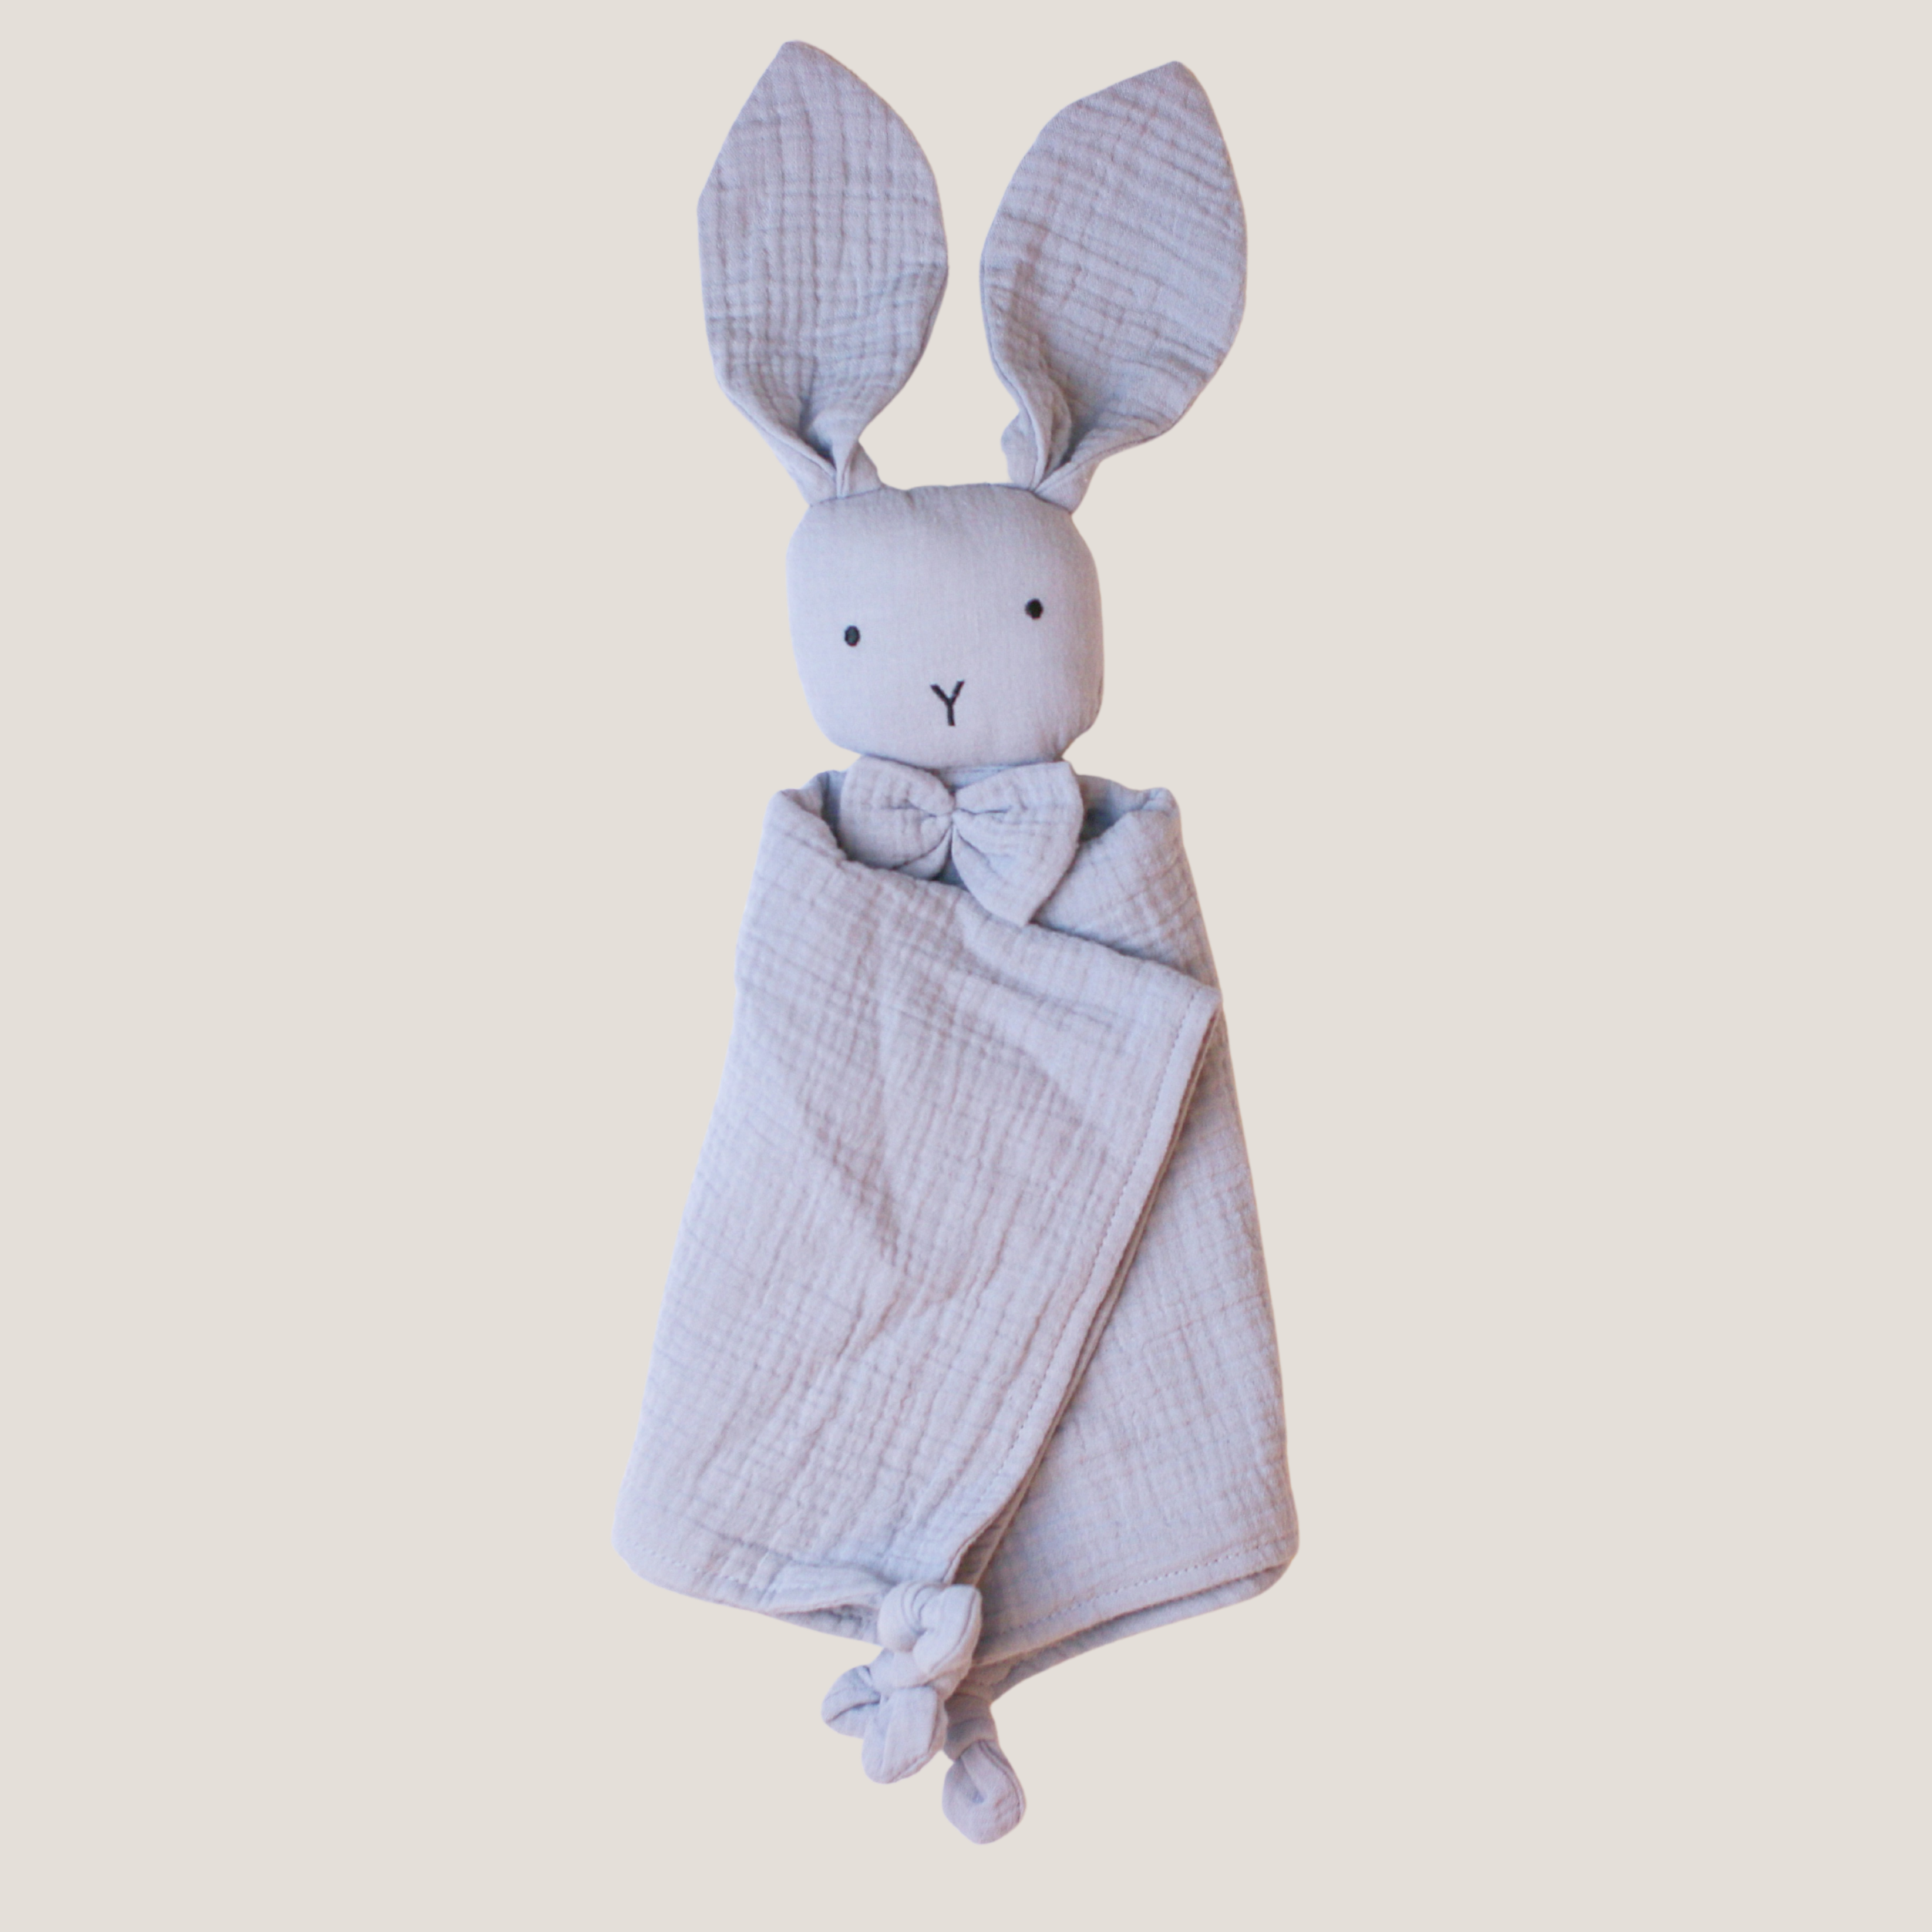 Snuggly Bunny Comforter in Gentle Grey